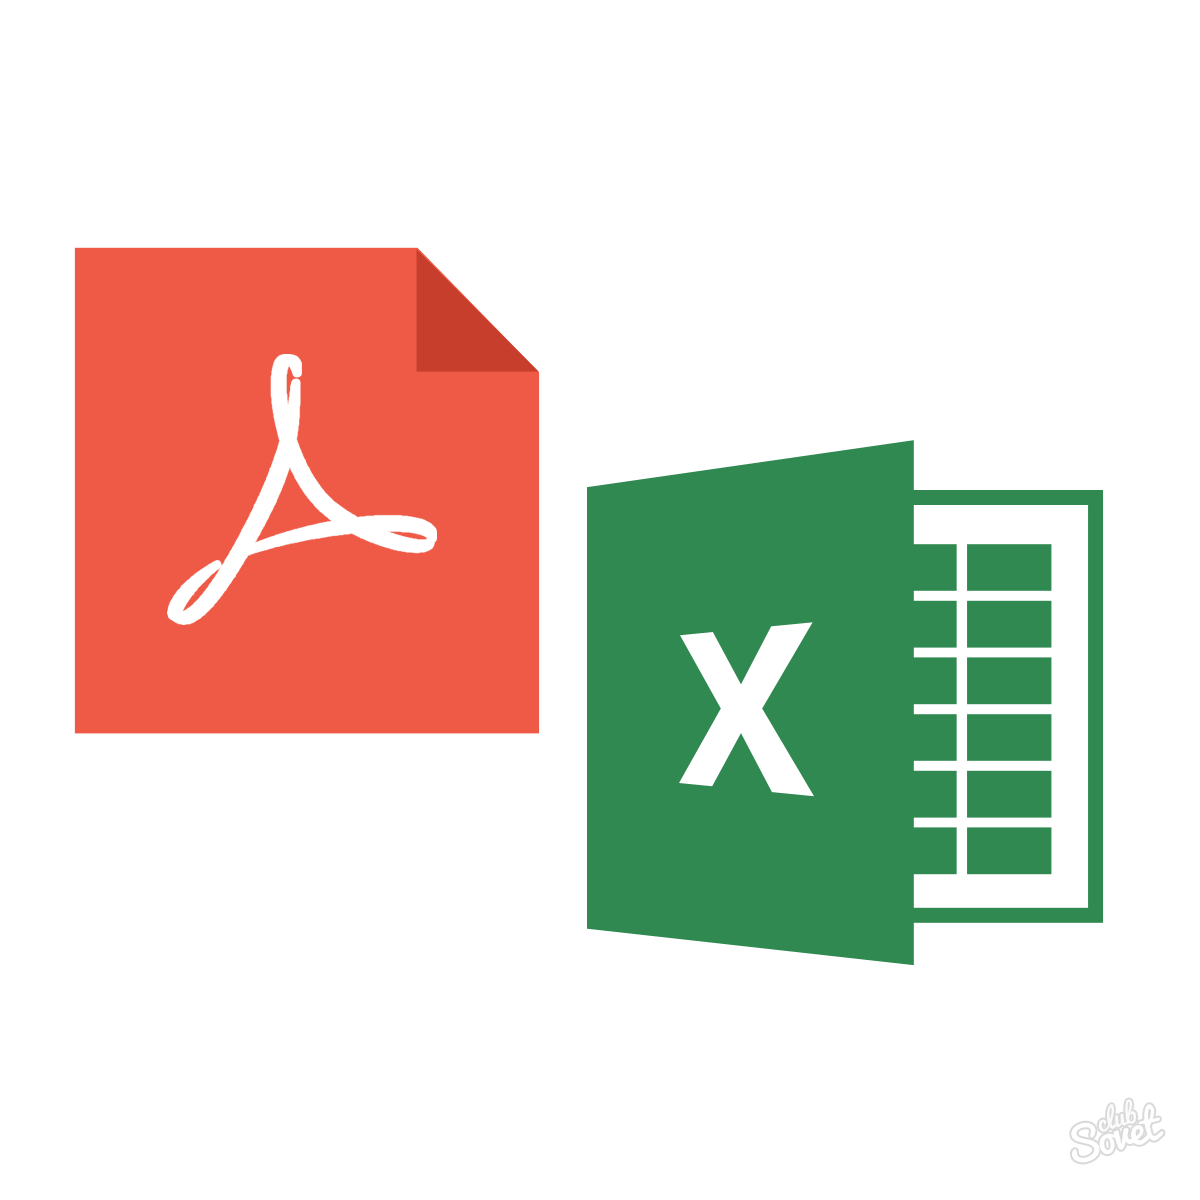 Как Excel перевести в PDF